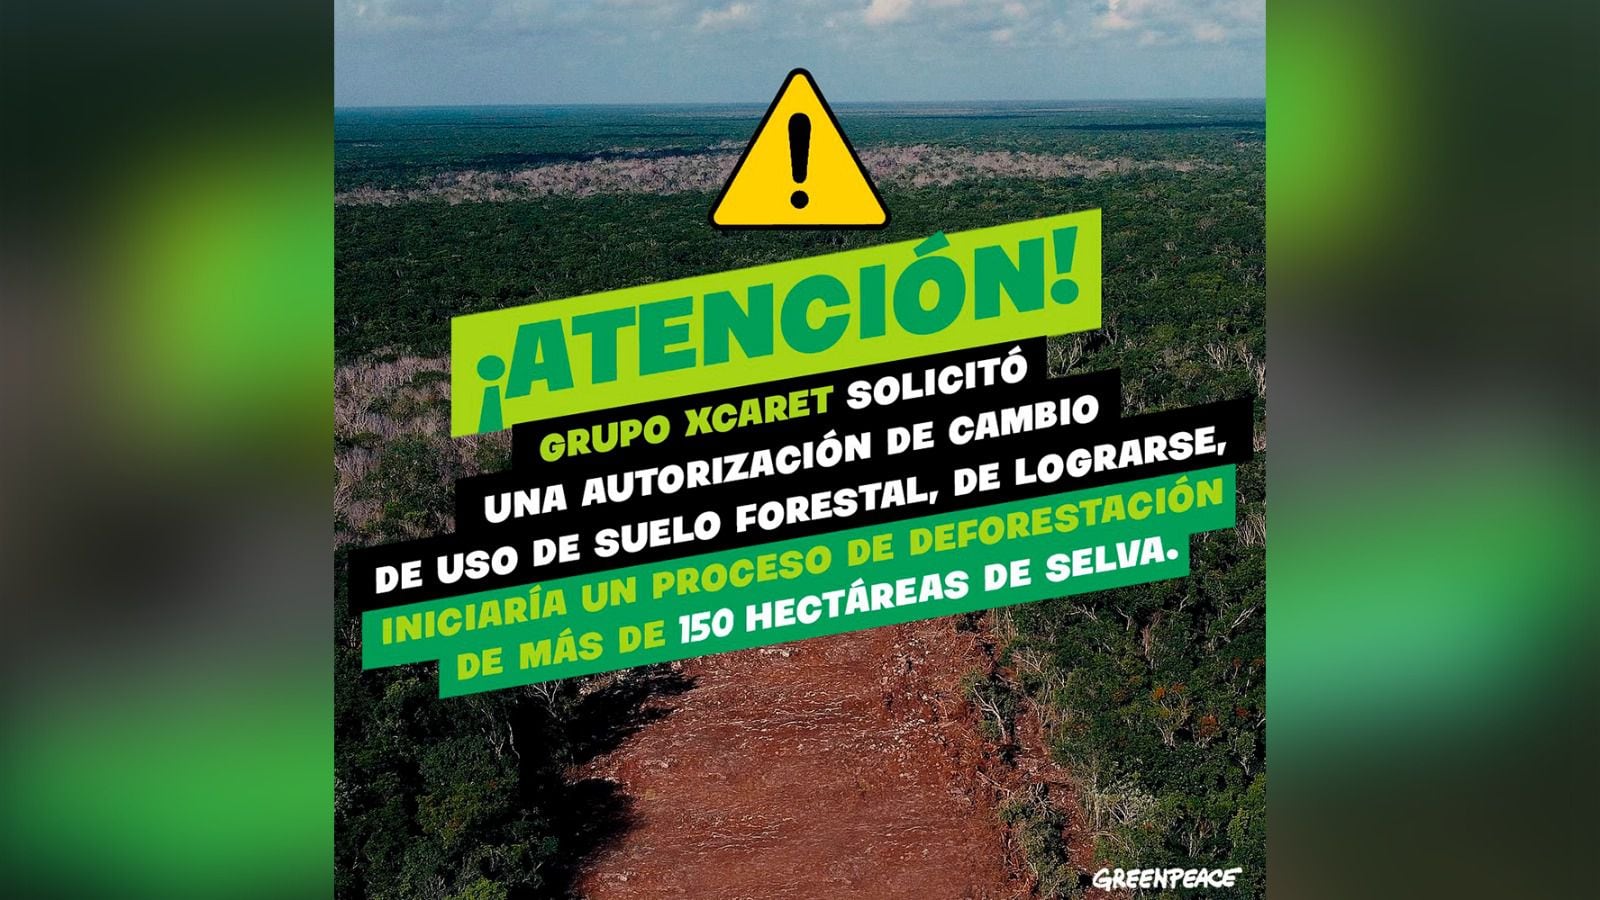 Megaproyecto turístico de Grupo Xcaret pretende una tala masiva de árboles en Yucatán: Greenpeace